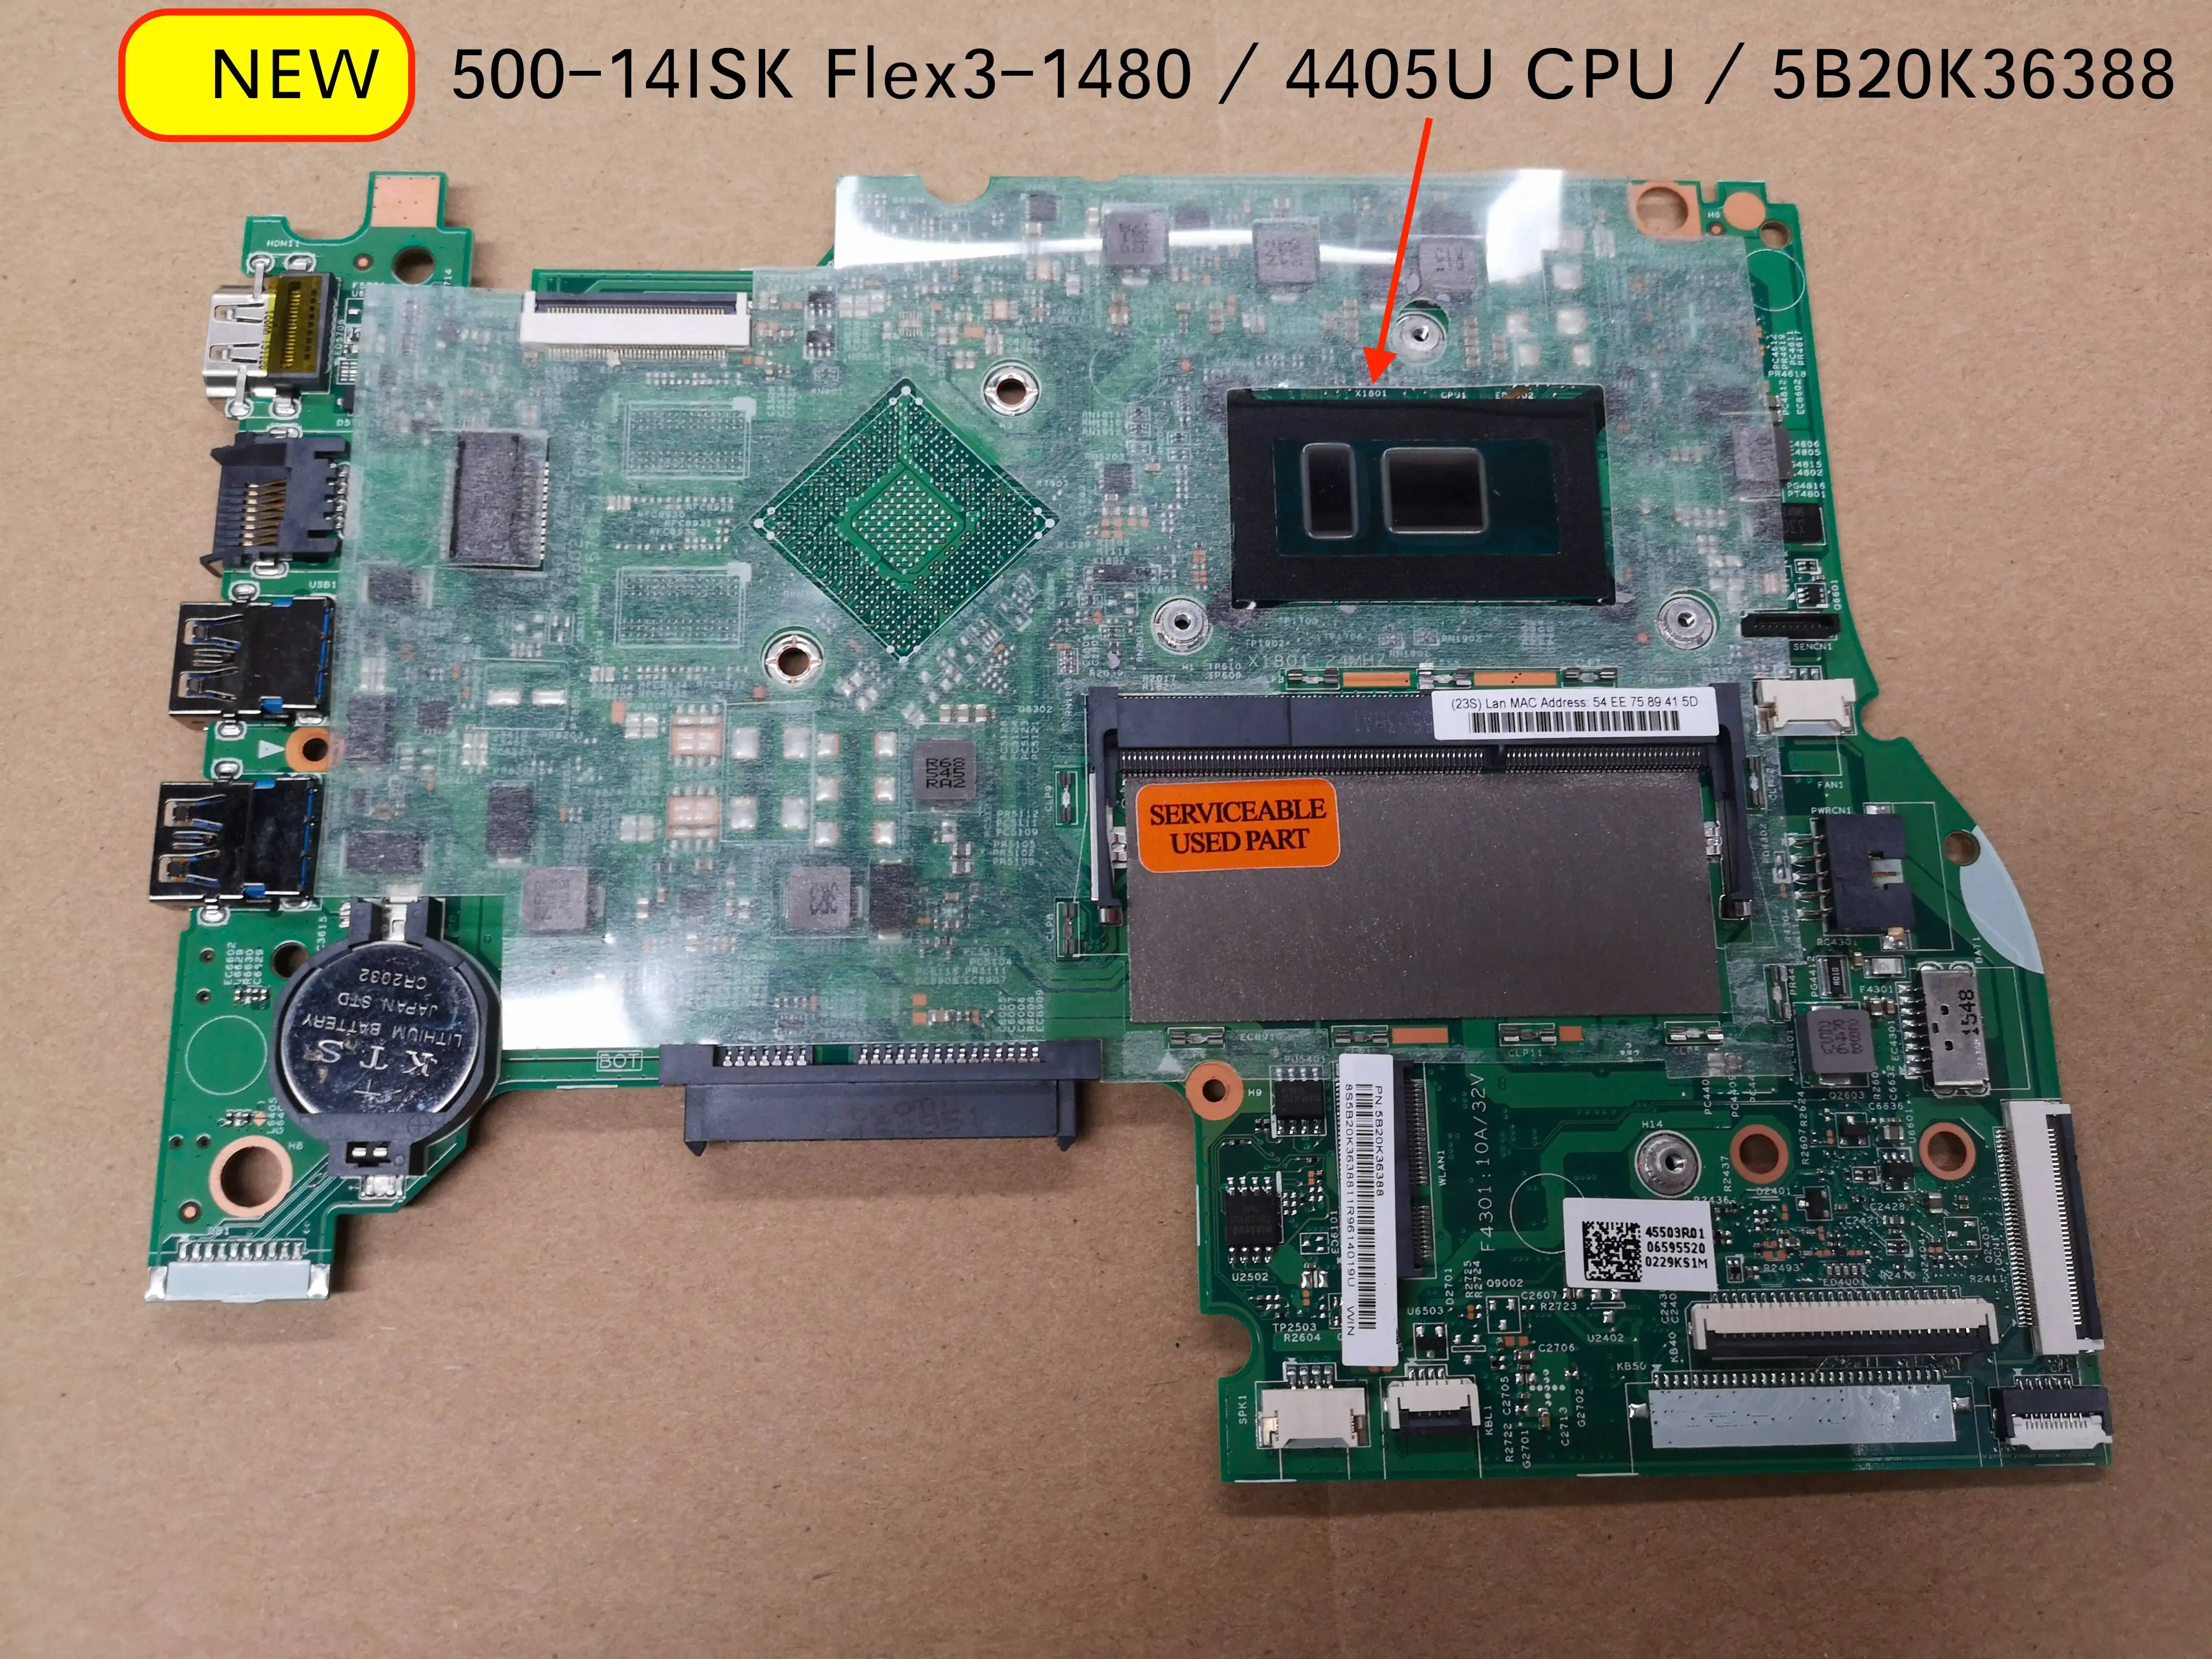 Original Nuevo Para Lenovo Yoga 500-14isk flex 3-1480 de la placa base del ordenador portátil 5B20K36388 con intel 4405 CPU 448.06701.0011 2